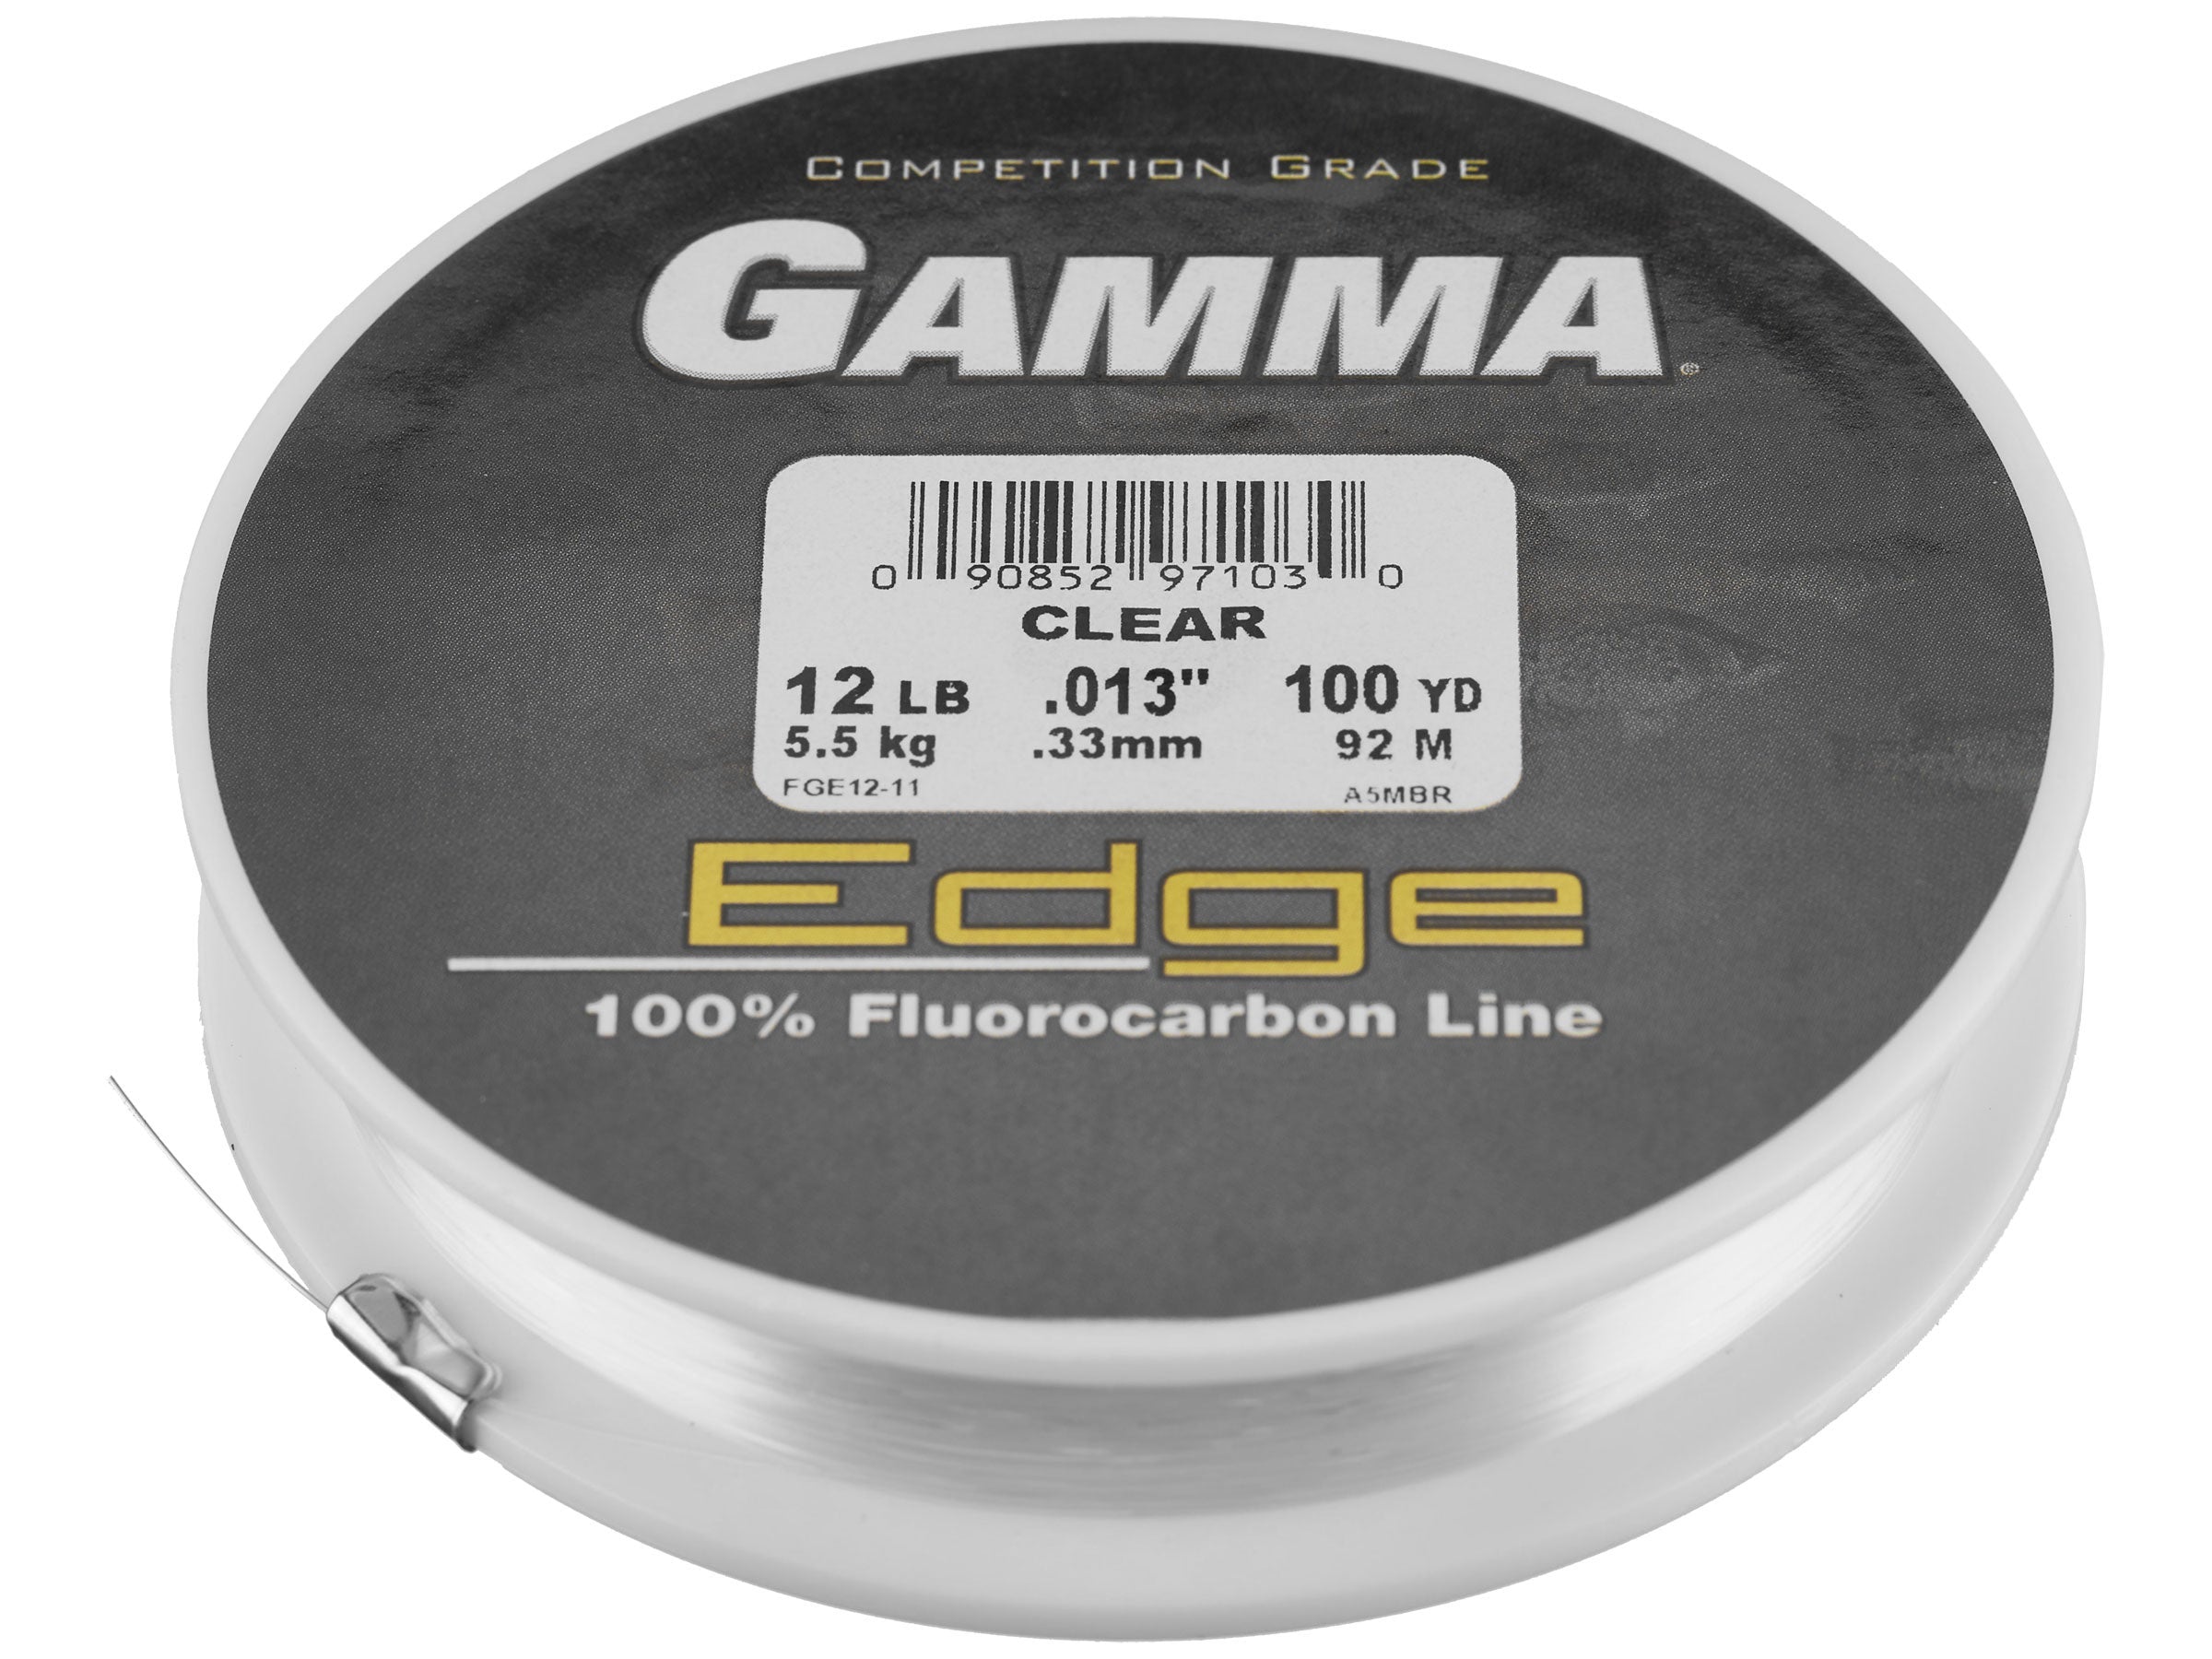 The Gamma Fishing Product Line – GammaFishing